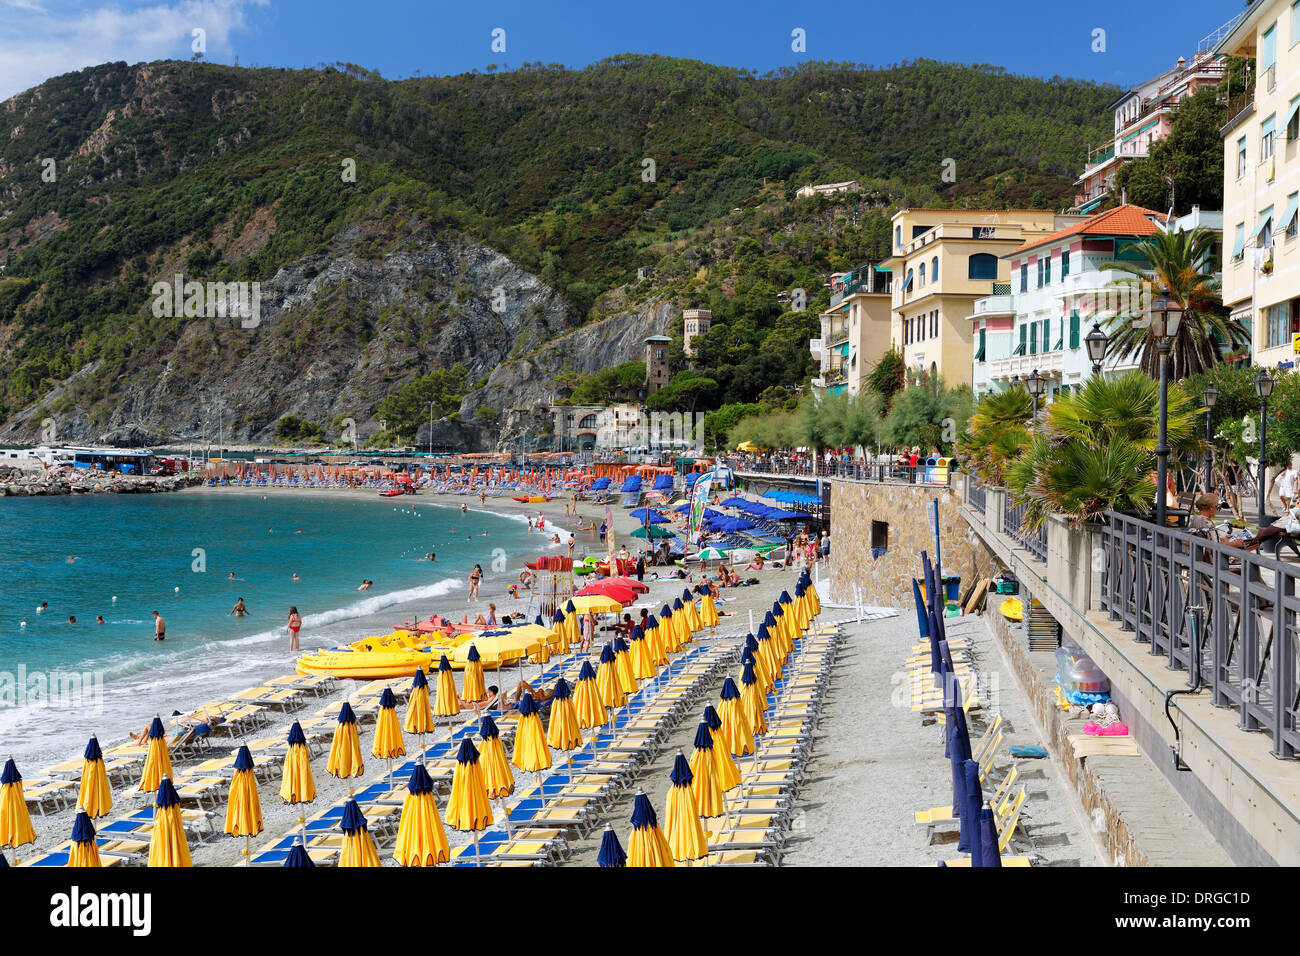 Rangée de chaises longues et de parasols sur une plage, Monterosso al Mare, Cinque Terre, ligurie, italie Banque D'Images